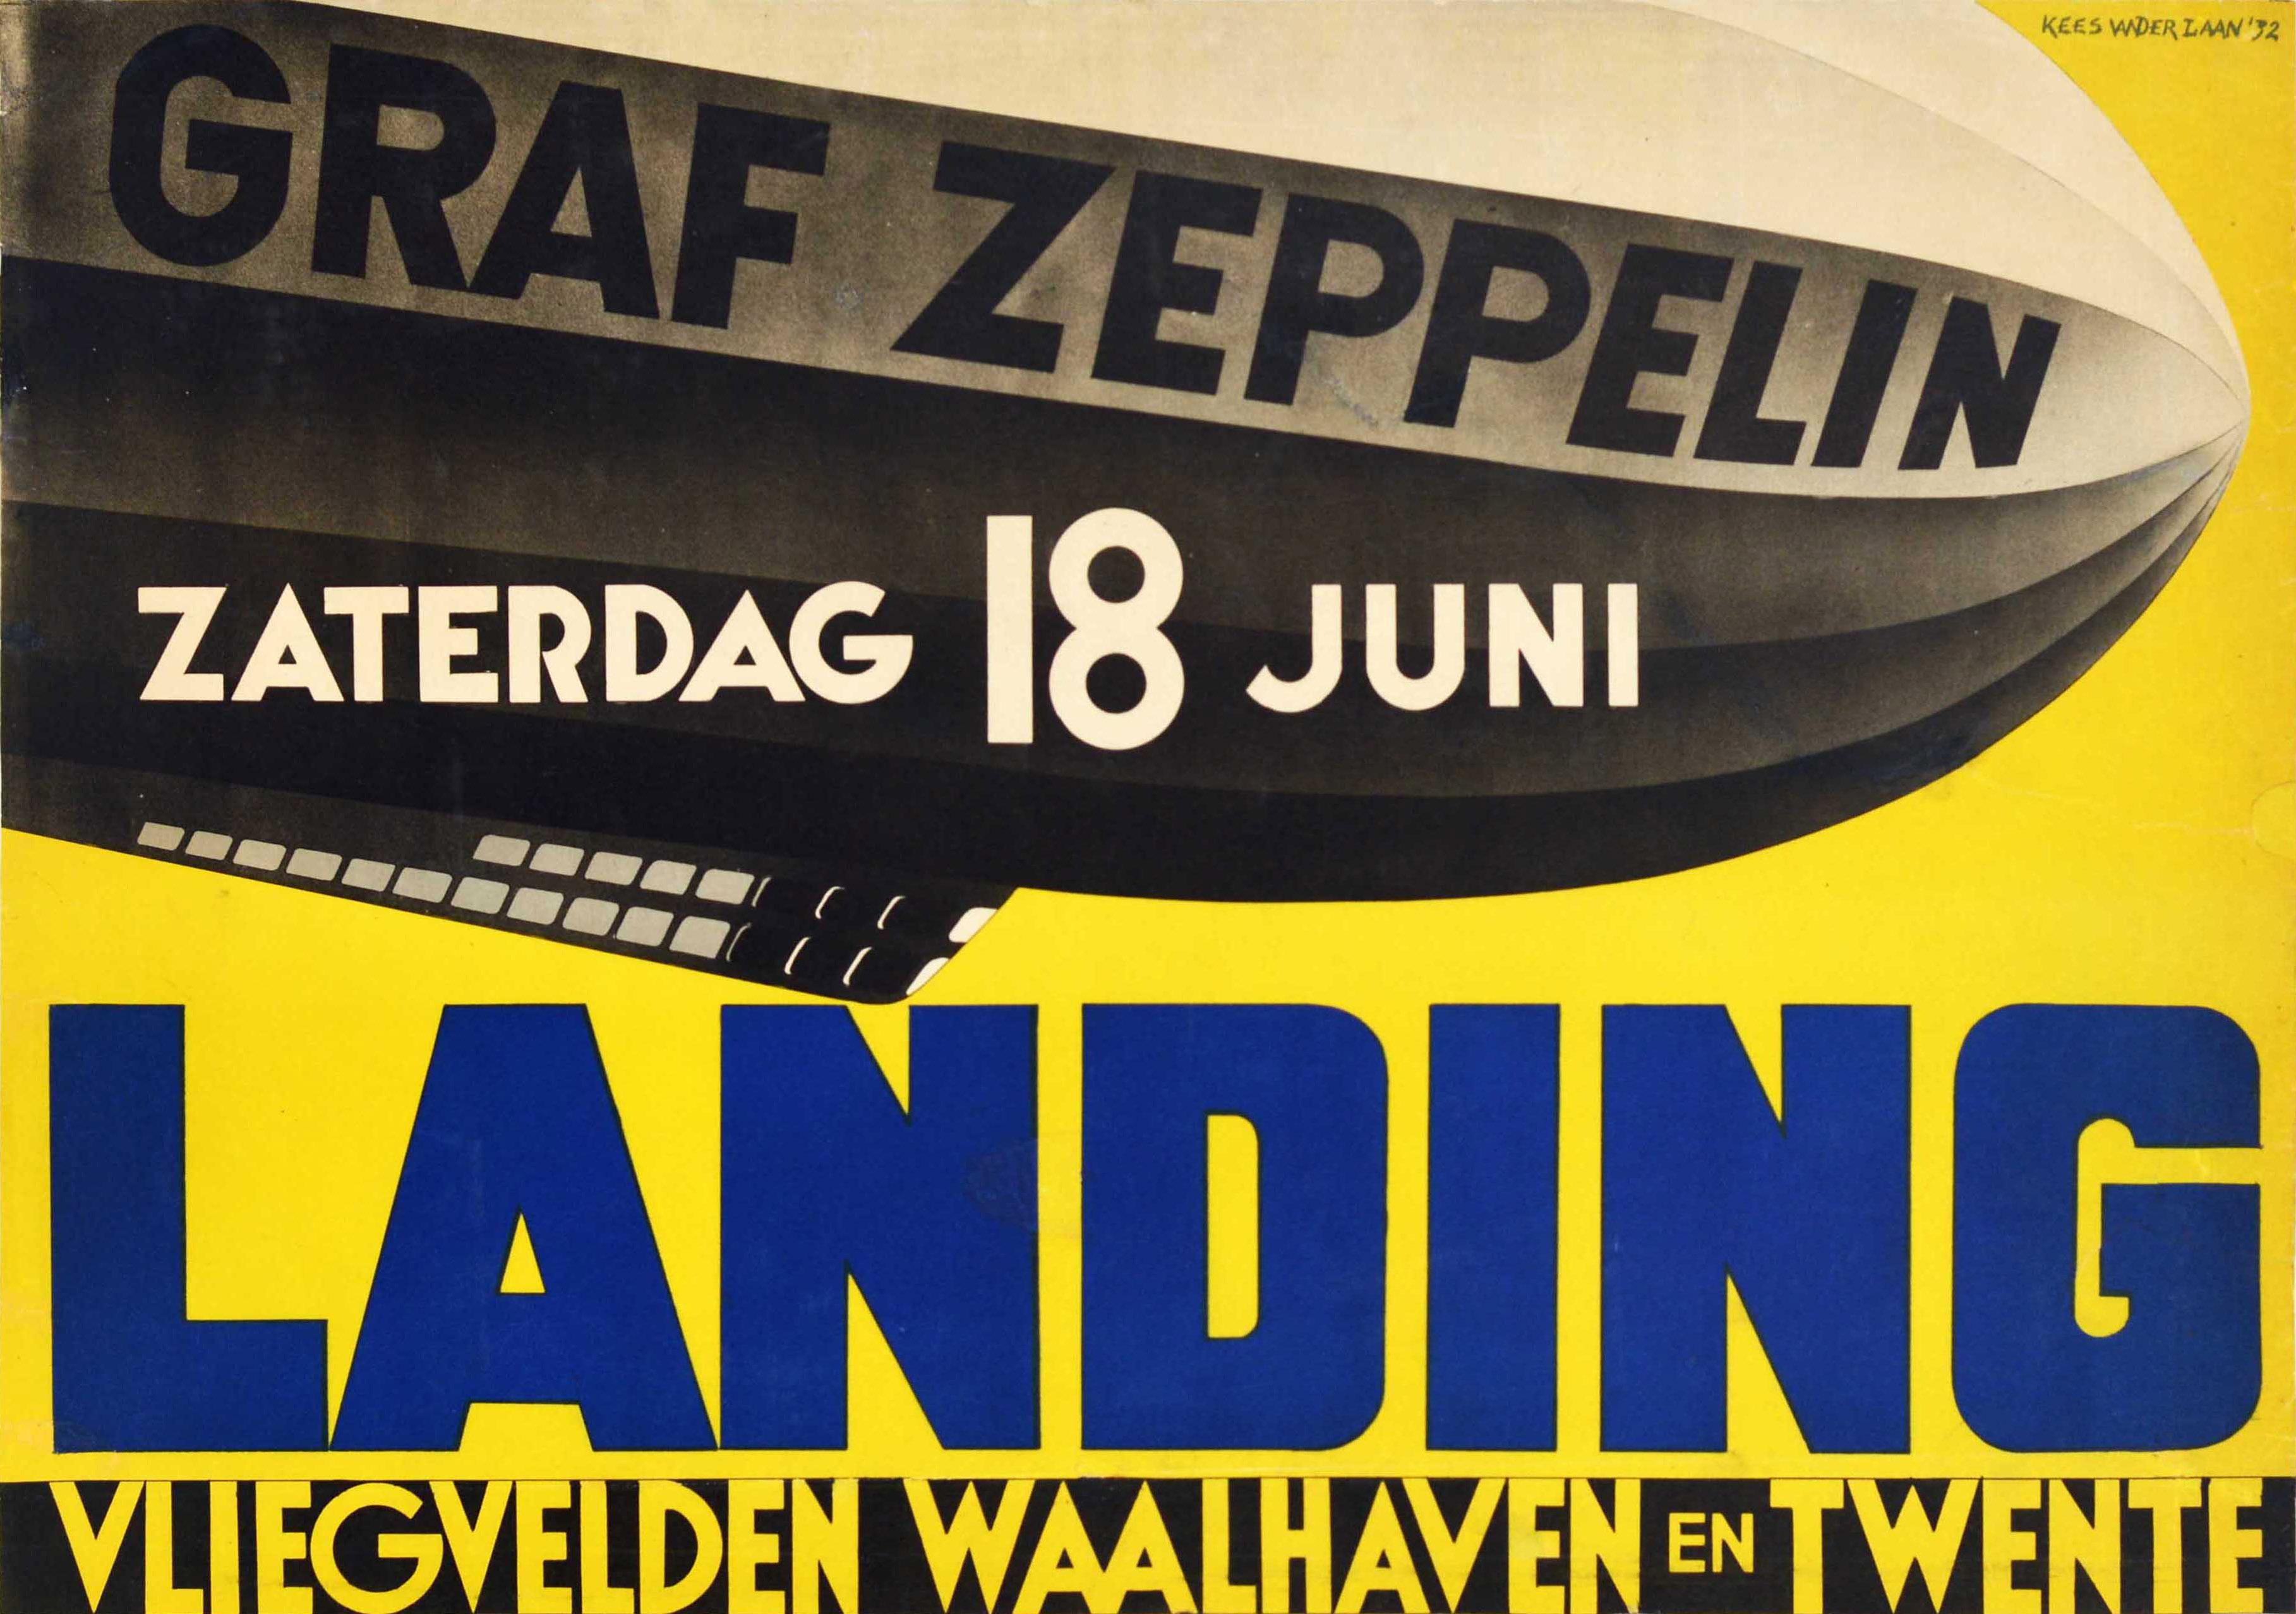 Kees van der Laan Print -  Original Vintage Poster For Graf Zeppelin Landing Vliegvelden Waalhaven Twente